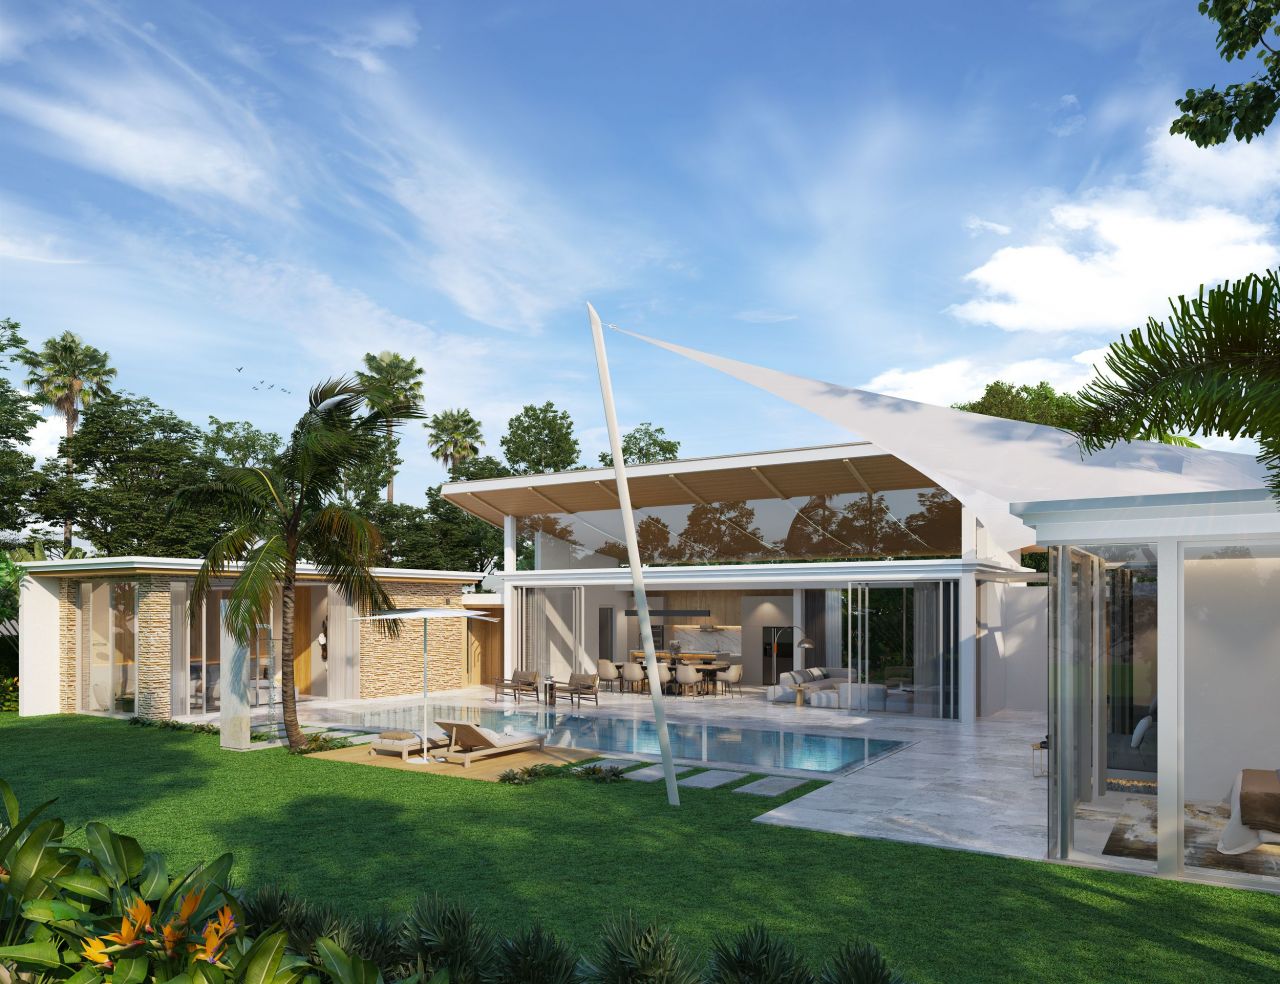 Villa in Insel Phuket, Thailand, 305 m2 - Foto 1